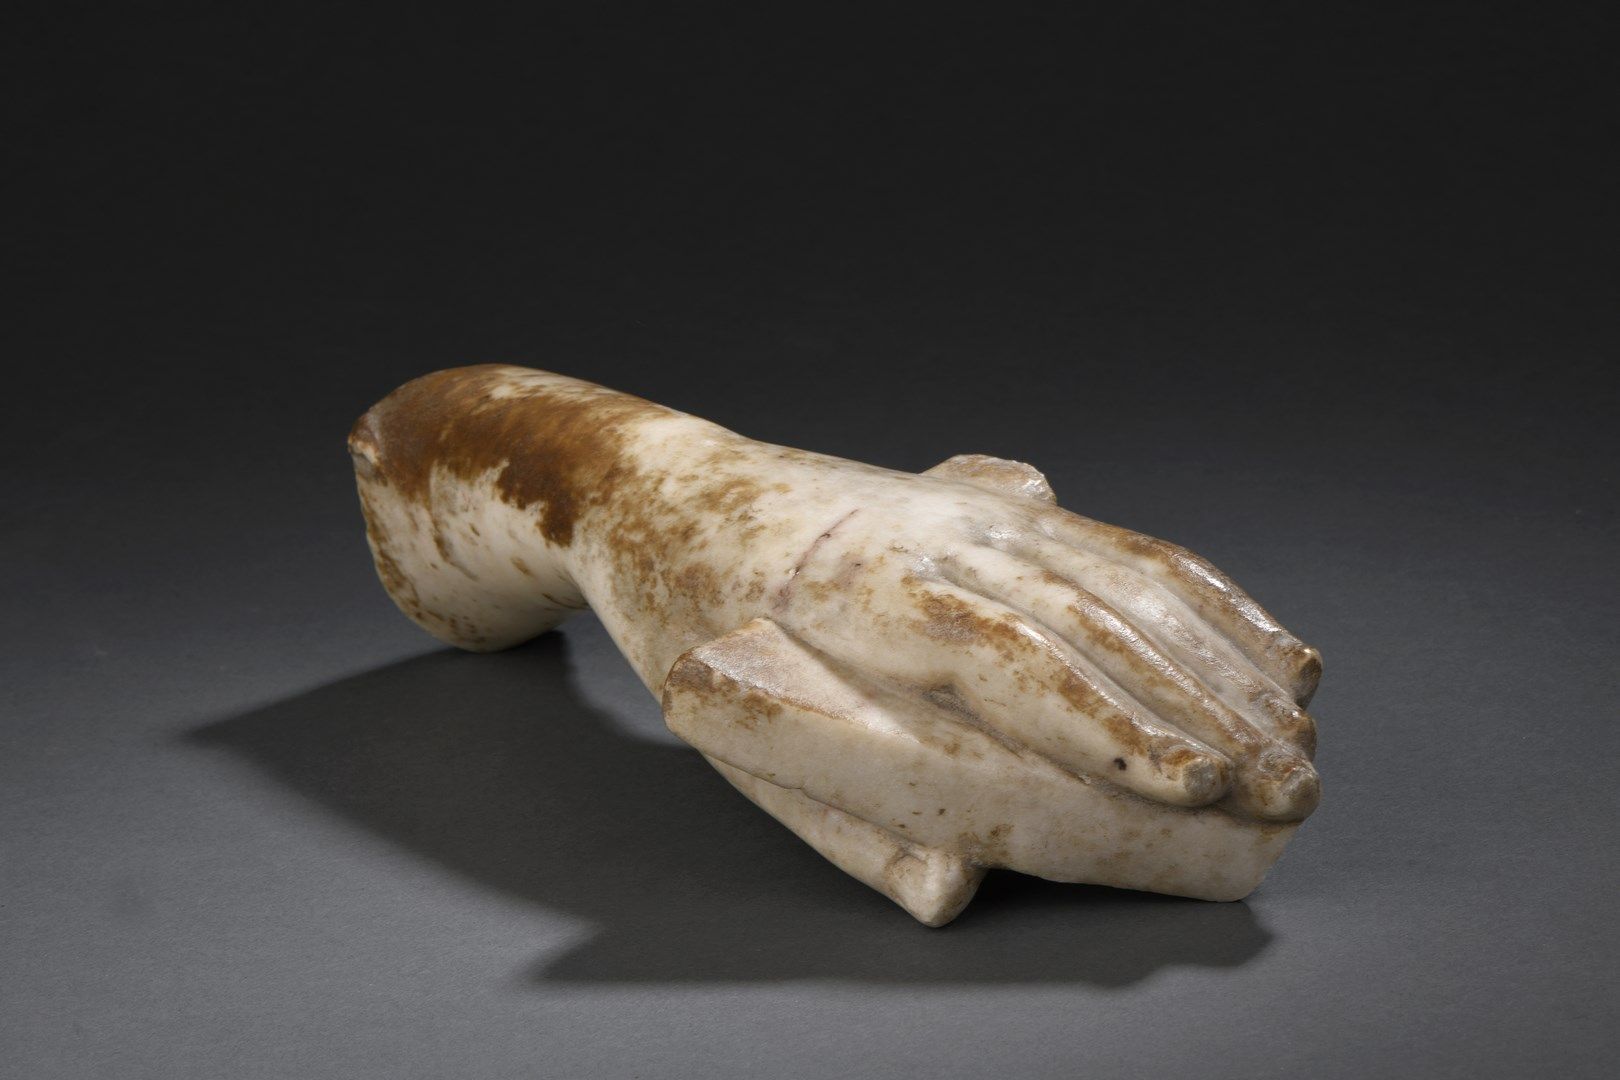 Null 雕刻的雪花石膏左手拿着一个属性，碎片。

可能是亚洲，15/16世纪

长度： 27 cm

(存款)